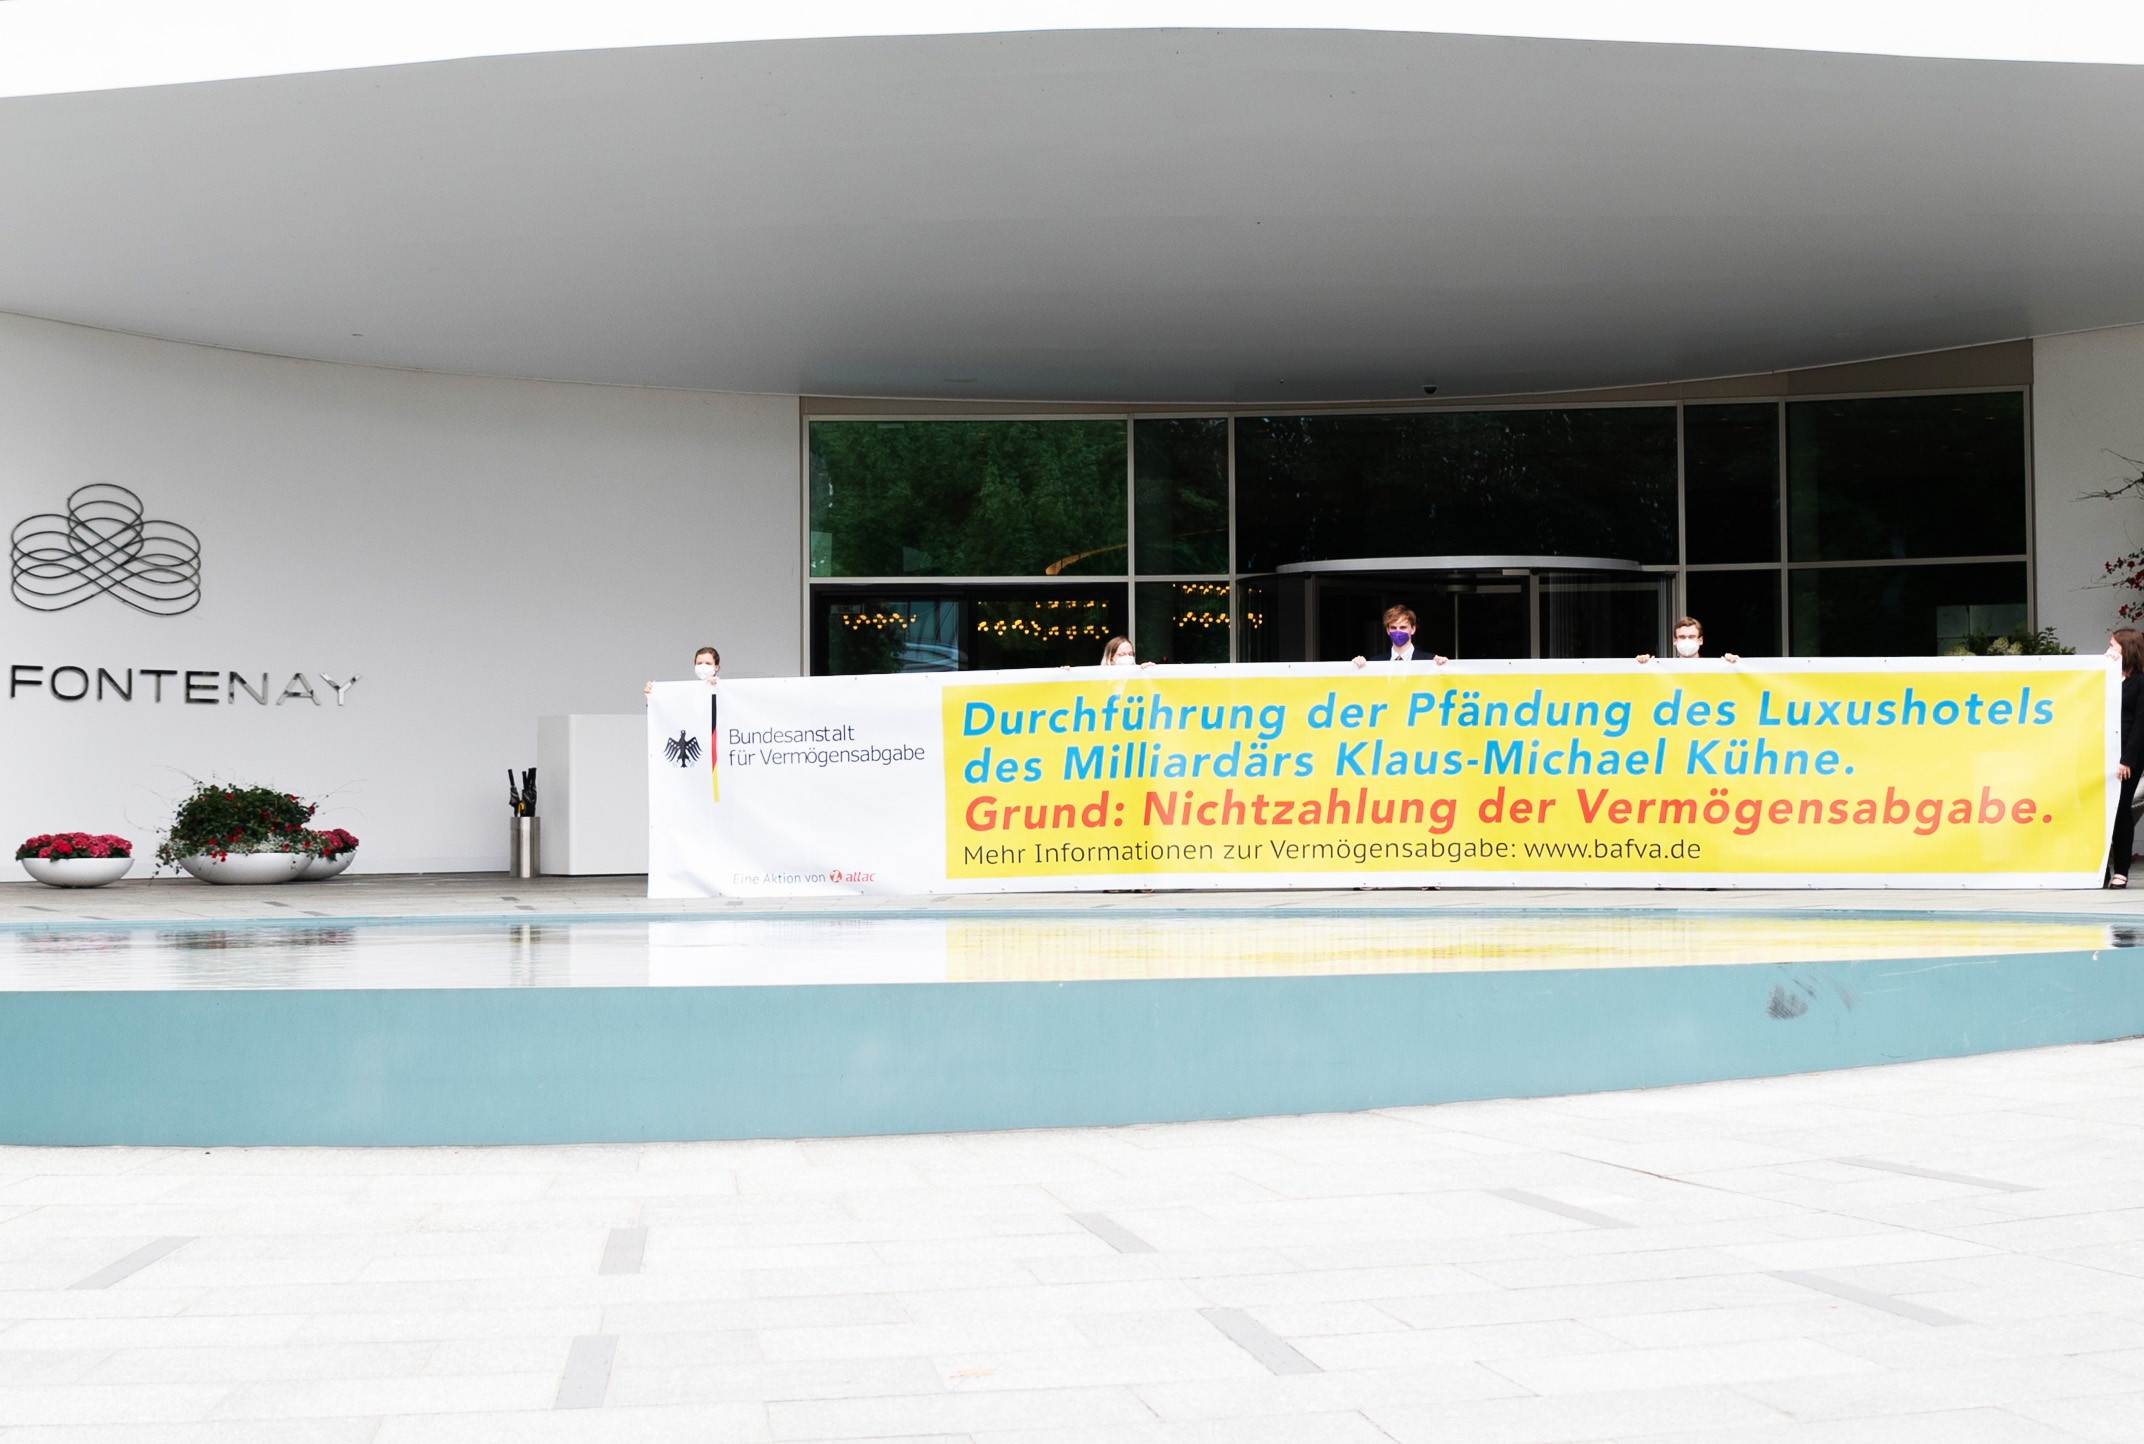 Aktivist:innen halten ein Großes Banner vor dem Eingang des Luxushotels “The Fontenay”, in dem Sie im Namen der Bundesanstalt für Vermögensabgabe die Pfändung des Hotels verkünden